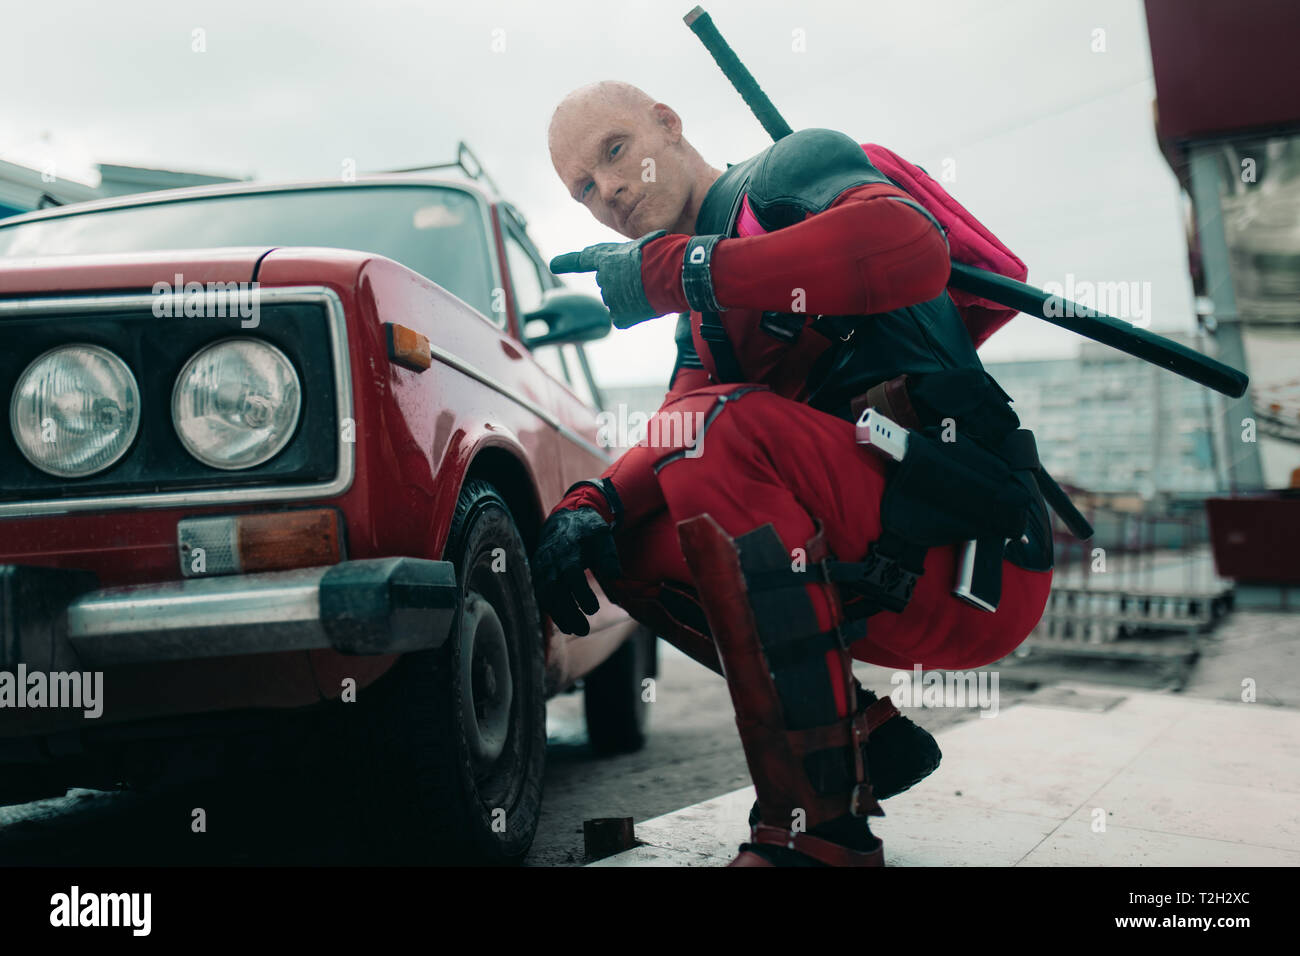 DNIPRO, UKRAINE - 28. MÄRZ 2019: Deadpool cosplayer mit Gewehr und katanas  hinter seinem Rücken neben der retro Auto posiert Stockfotografie - Alamy